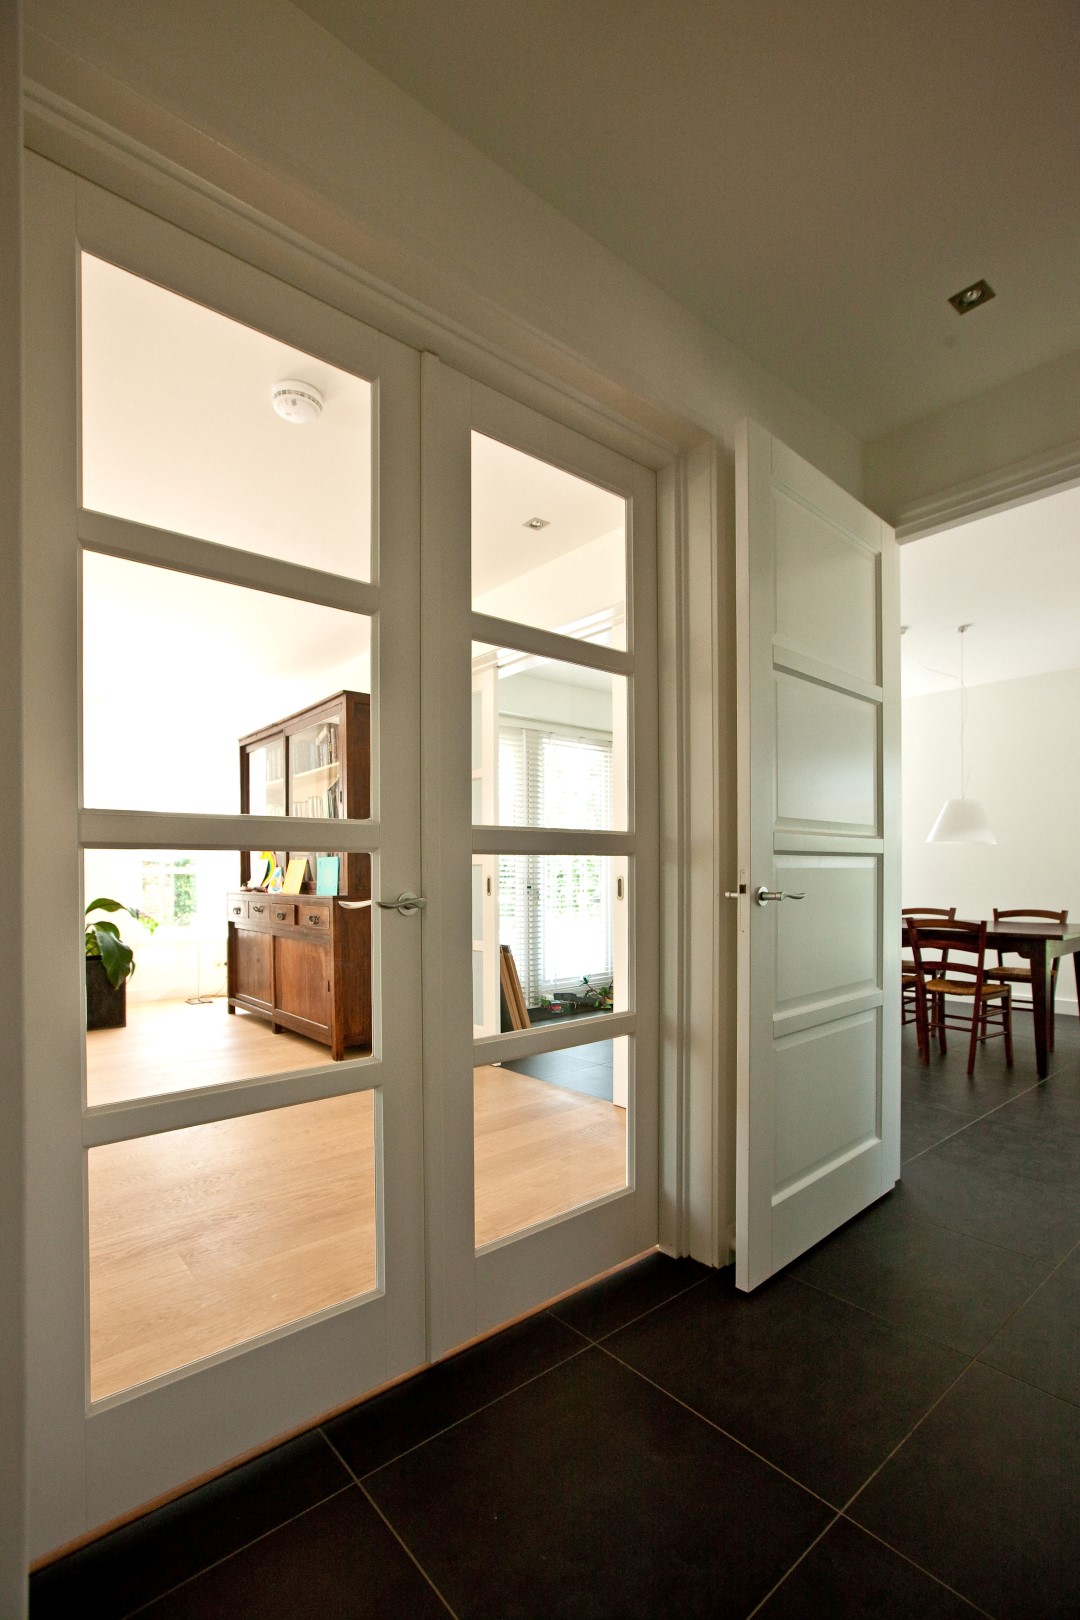 Foto: Huis bouwen   Moderne dubbele deuren   Lichtenberg Exclusieve Villabouw